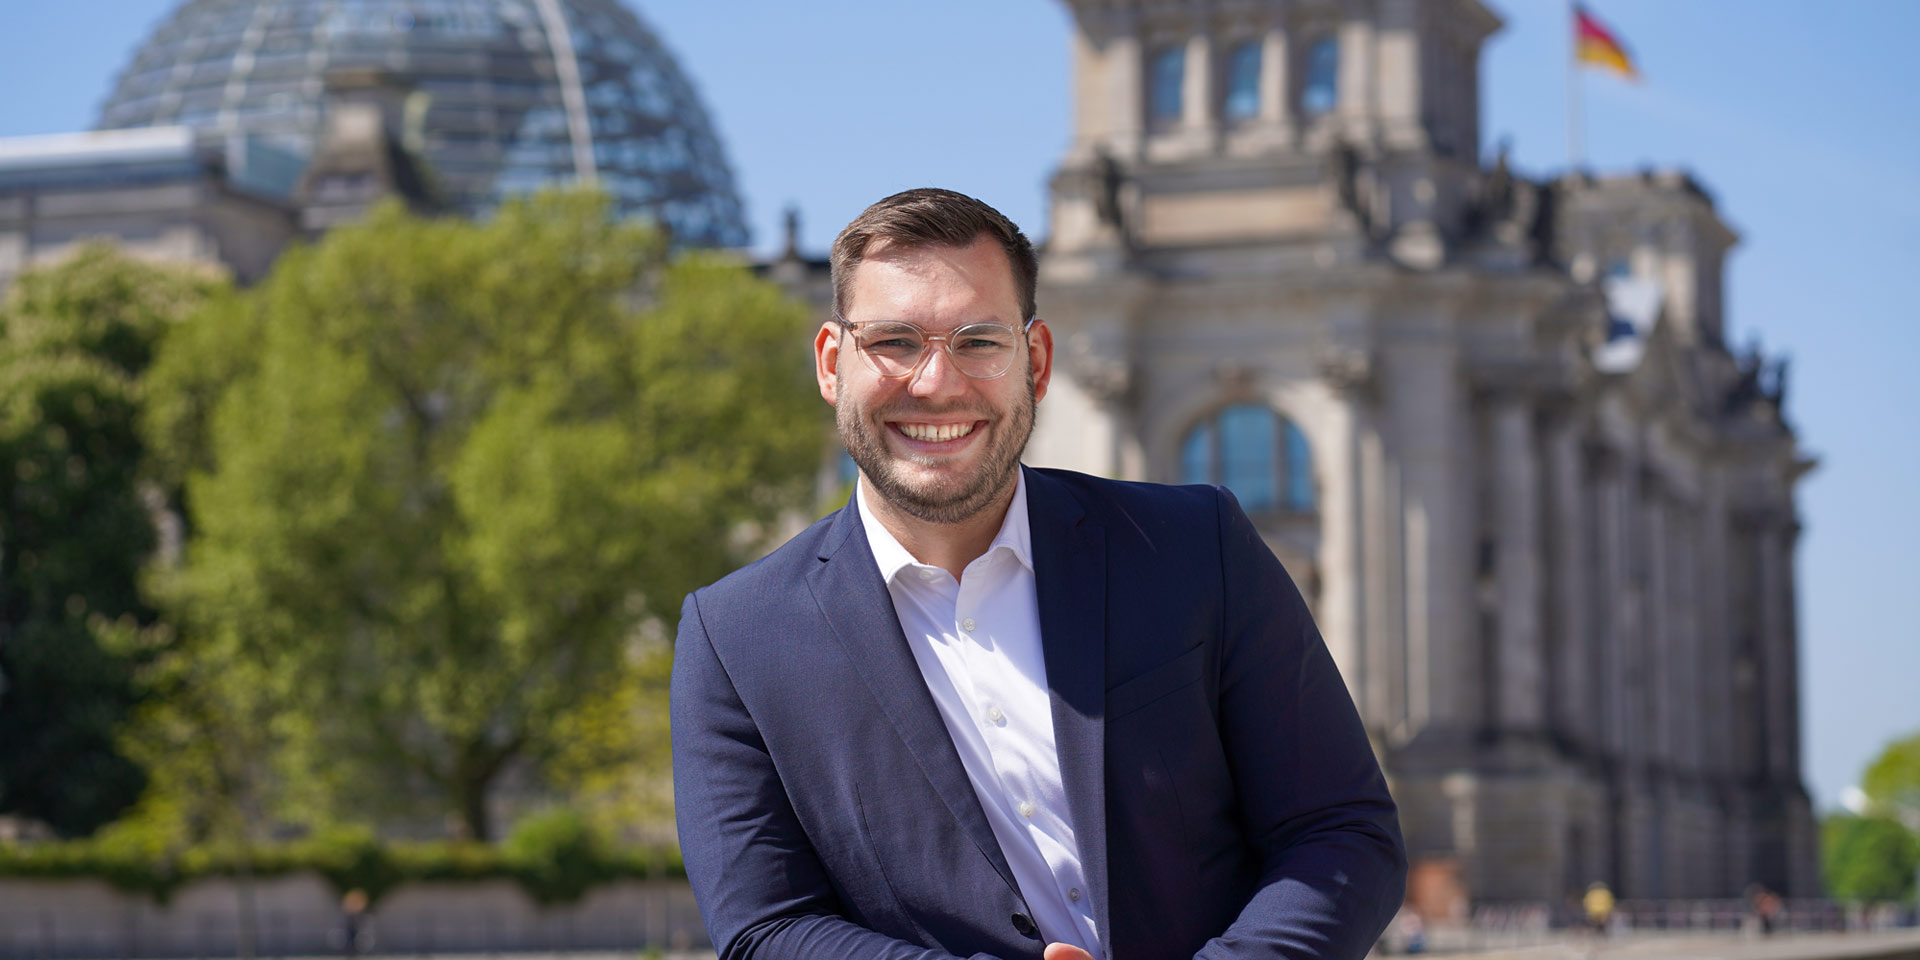 Daniel Baldy lächelt im Anzug, hinter ihm der Deutsche Bundestag